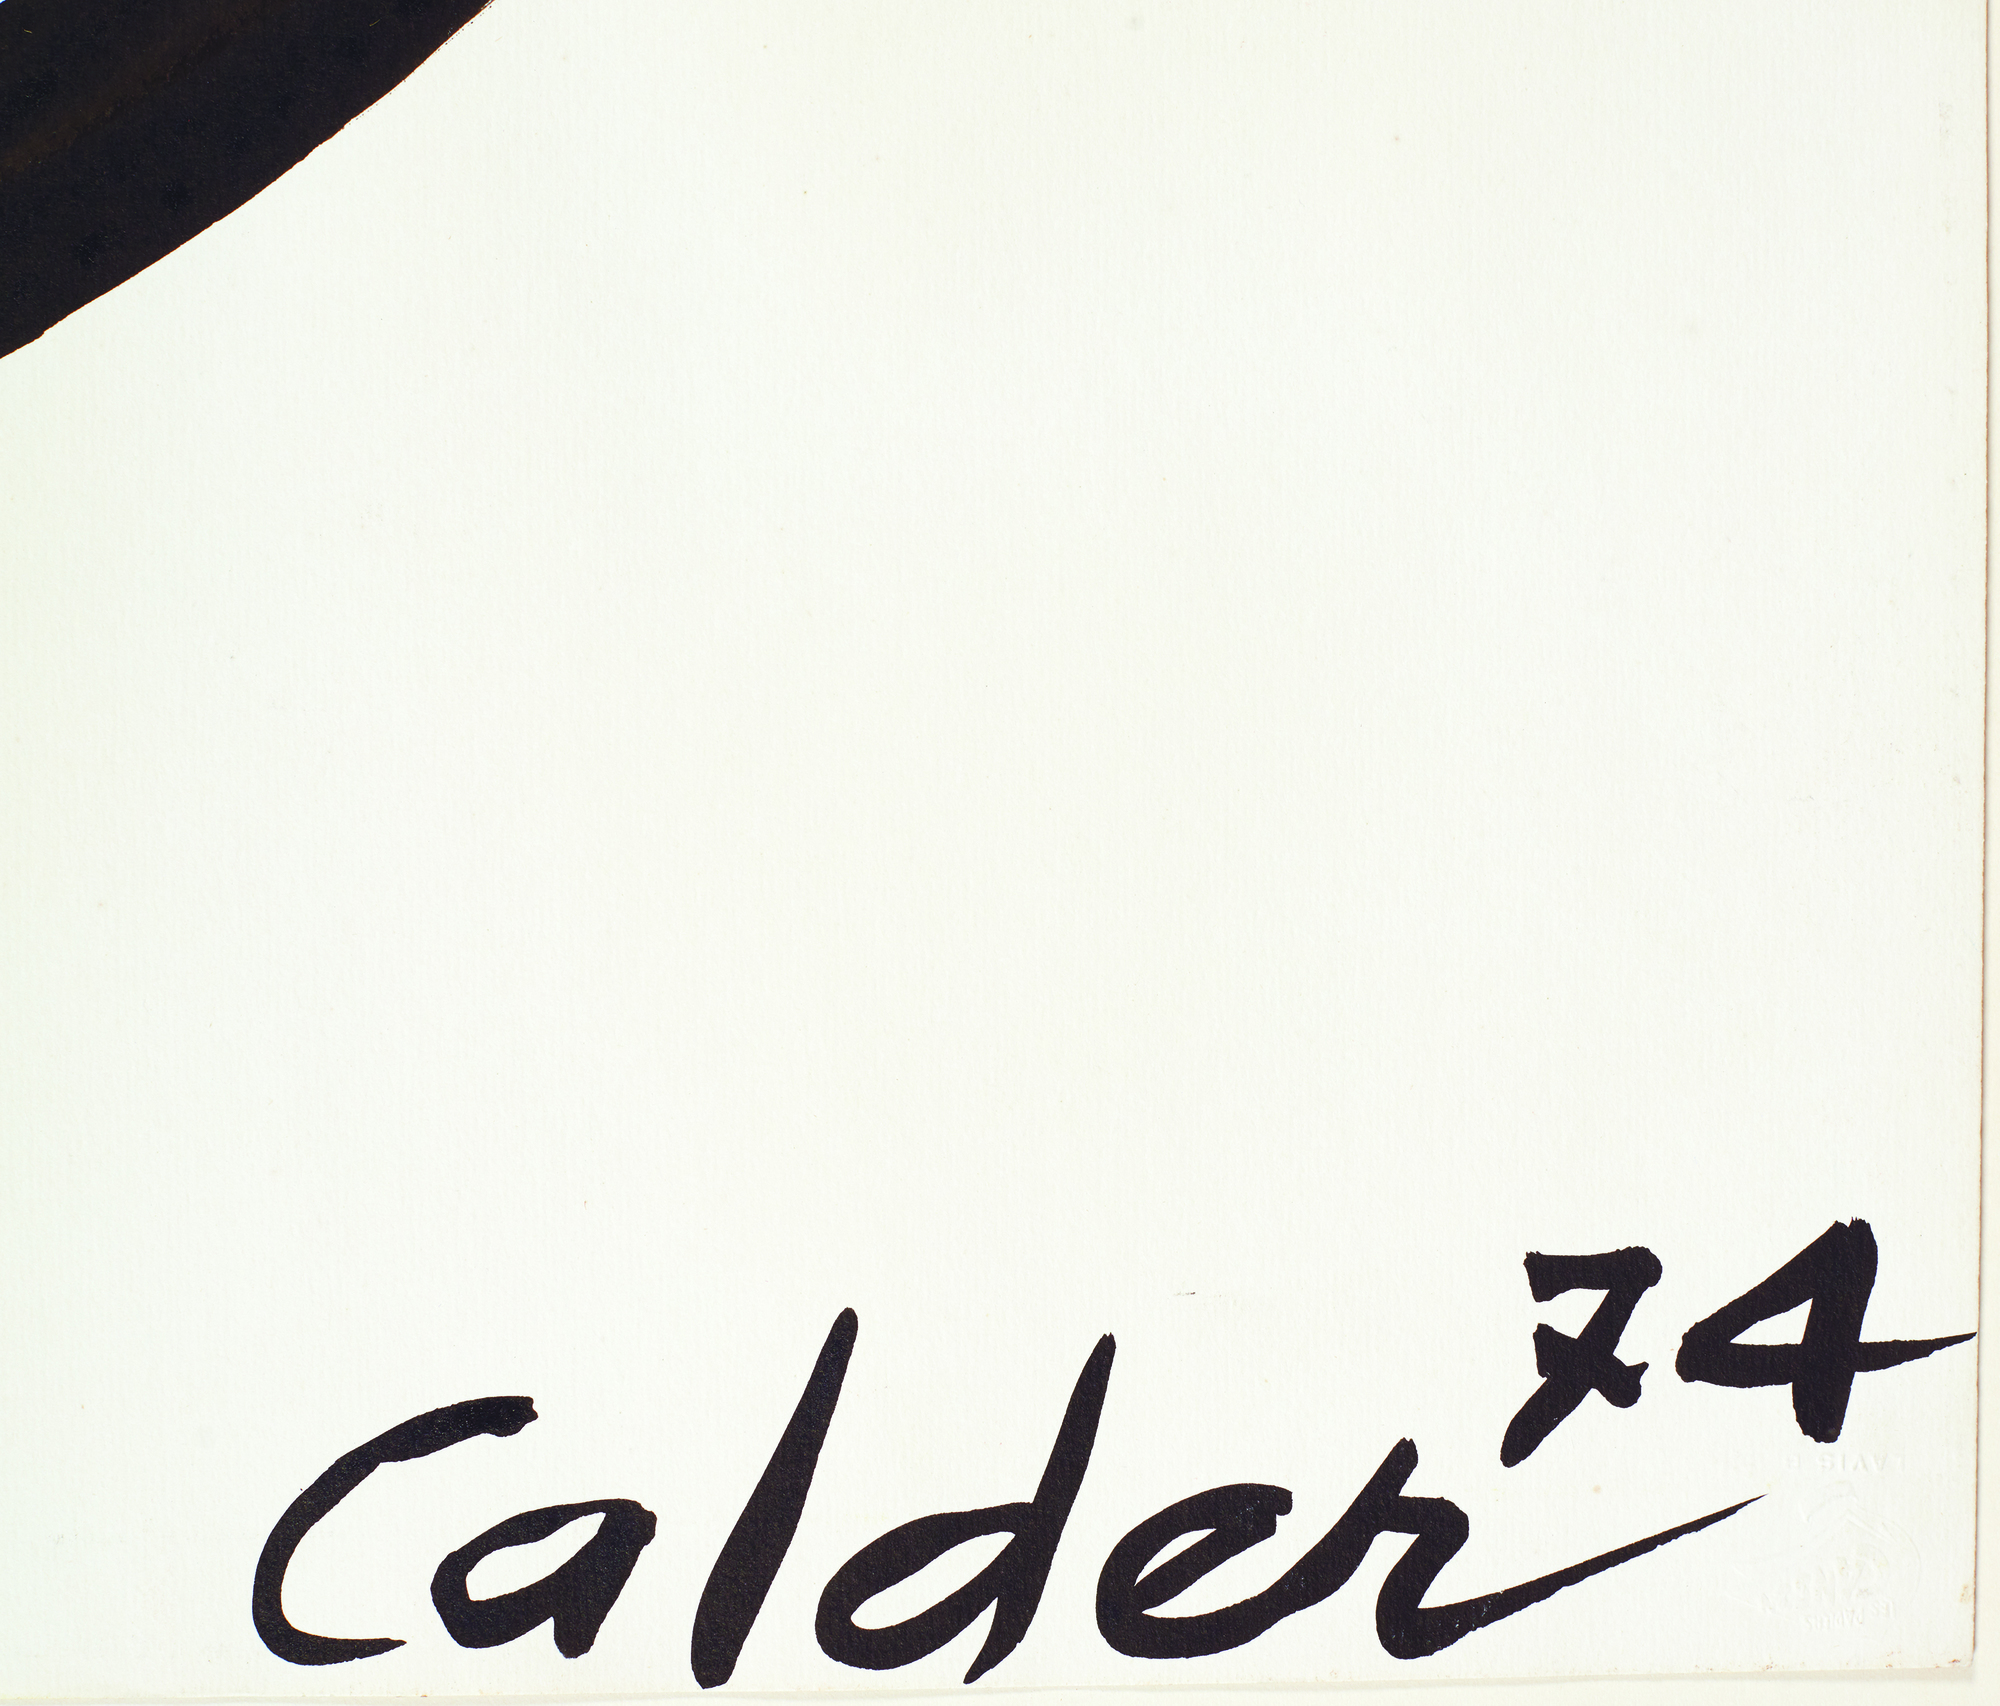 אלכסנדר קלדר - הספירלה הסגלגלה - גואש ודיו על נייר - 43 1/4 x 29 1/2 אינץ'.